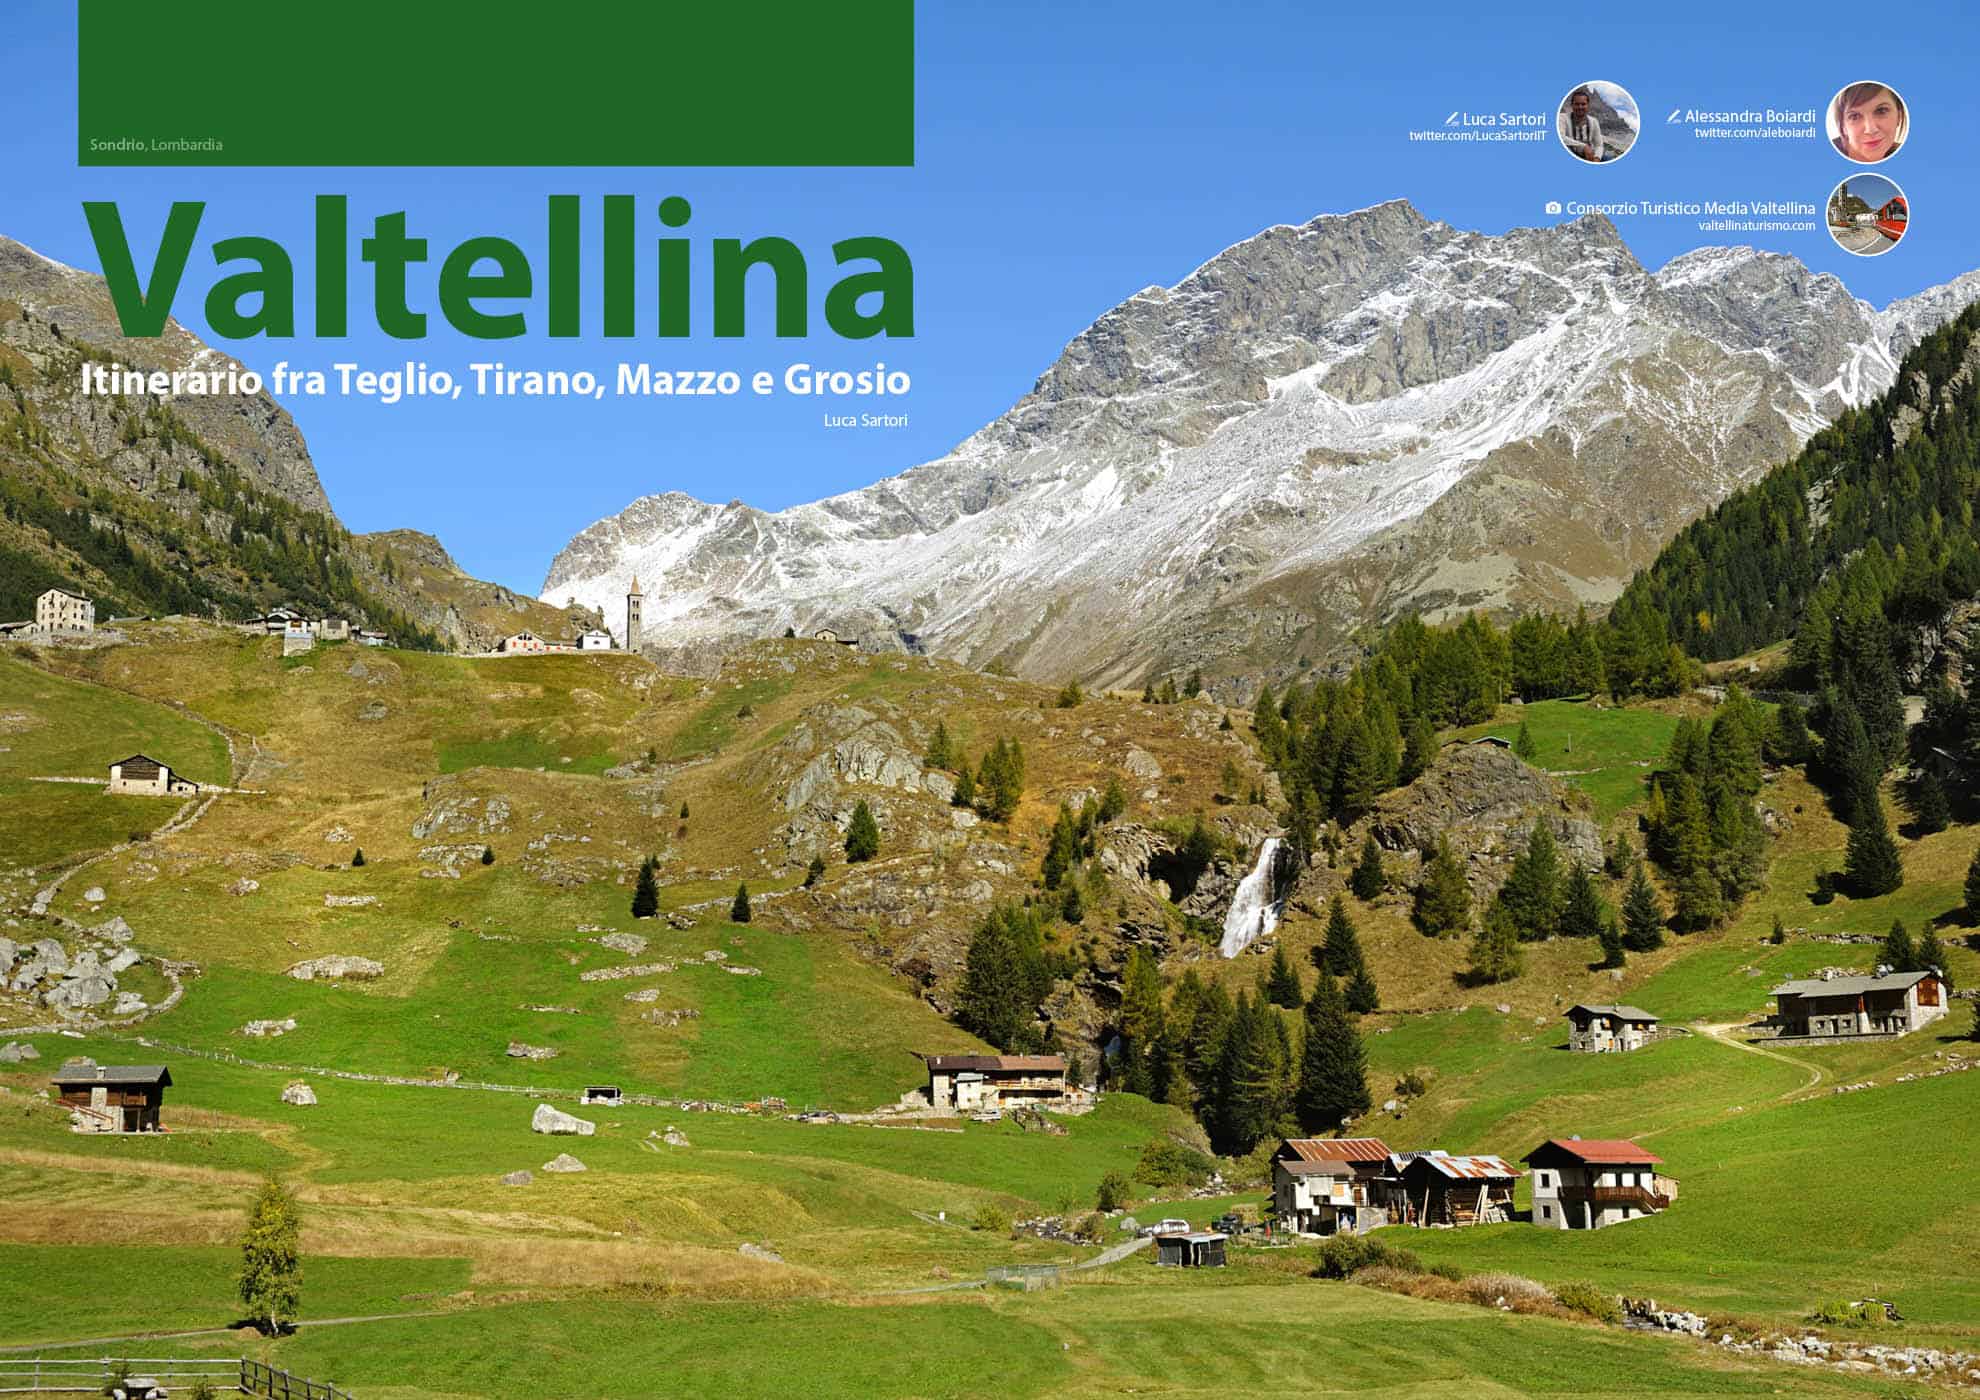 e-borghi travel 1: Montagna e borghi - Valtellina, Itinerario fra Teglio, Tirano, Mazzo e Grosio